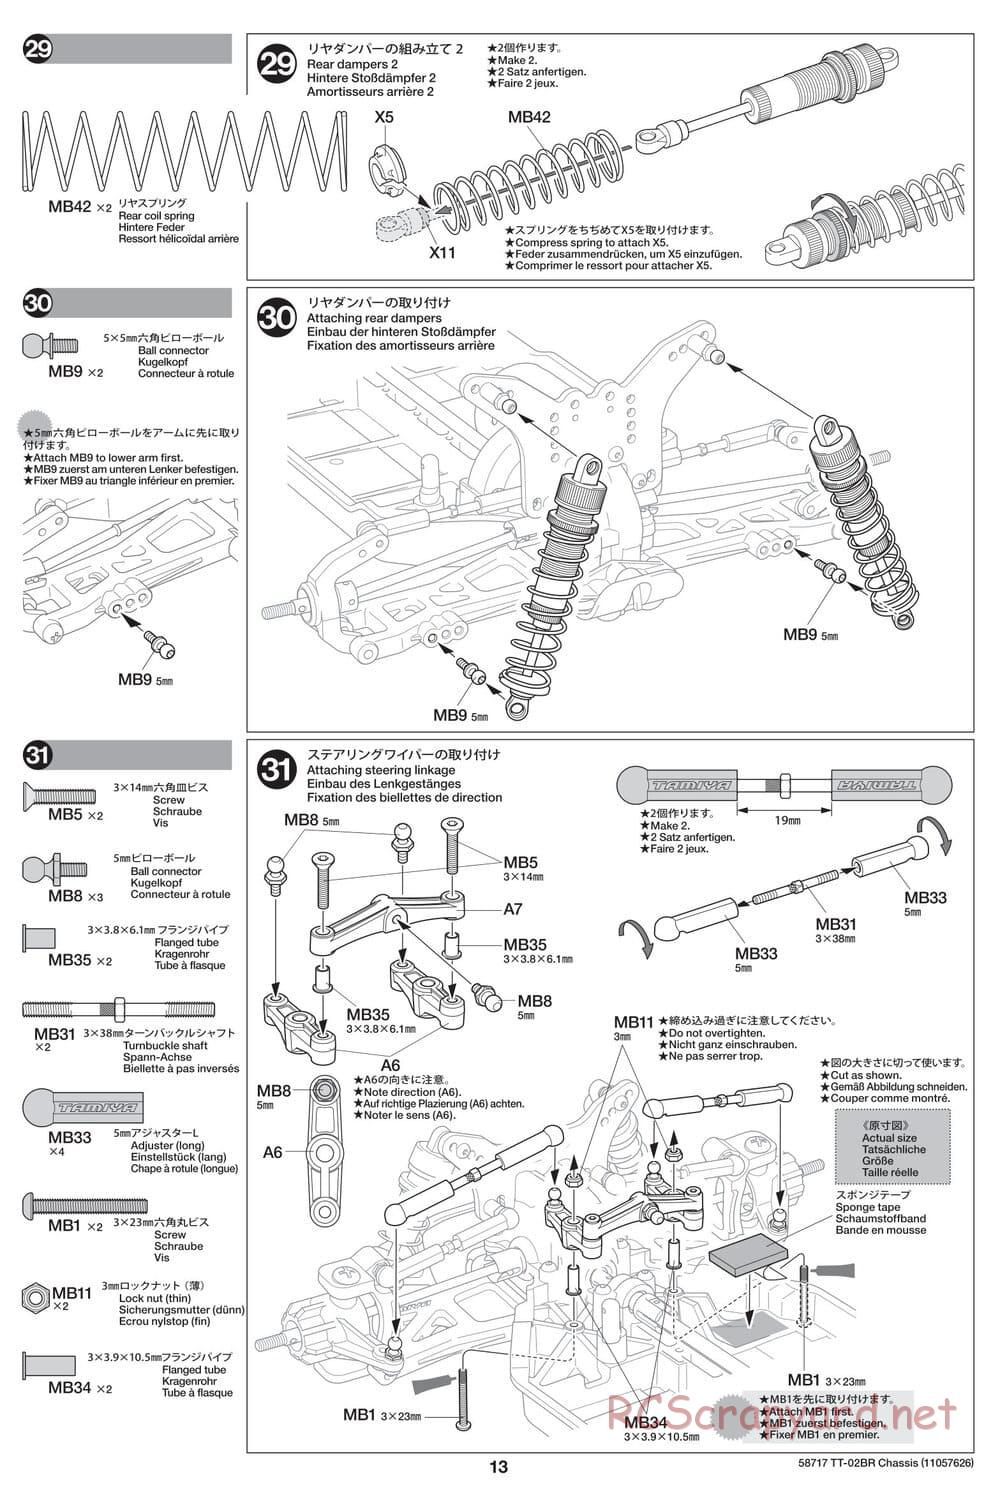 Tamiya - TT-02BR Chassis - Manual - Page 13